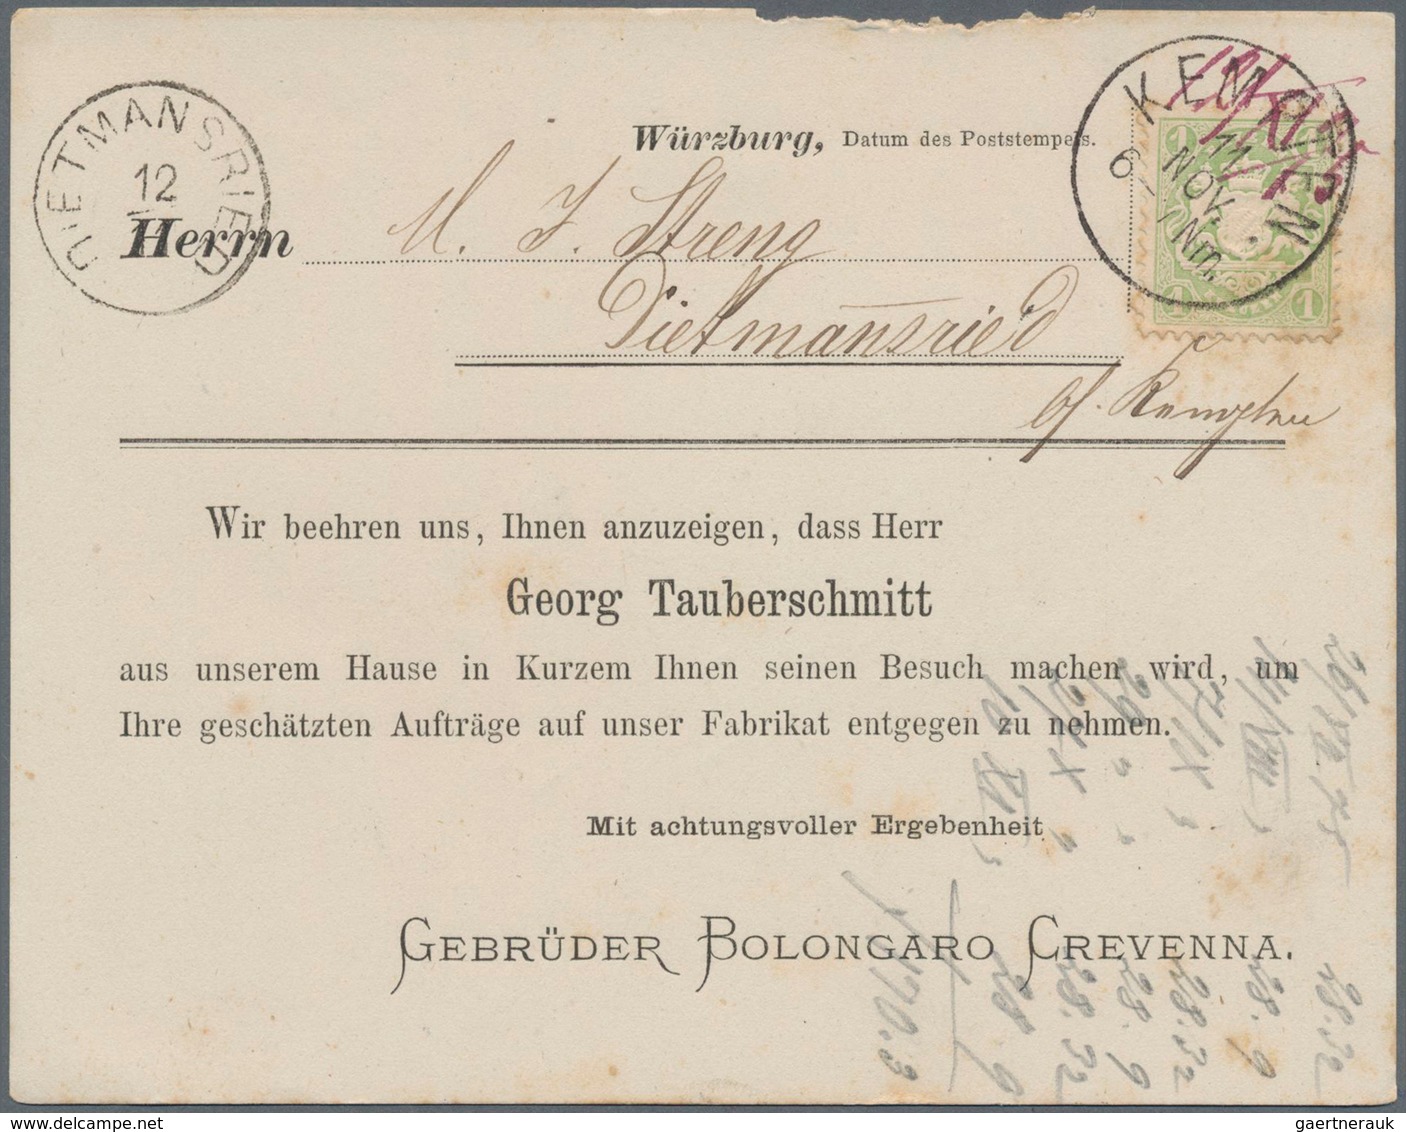 Bayern - Ortsstempel: KEMPTEN: 1869, 4 interessante Drucksachen aus Kempten mit 4 verschiedenen Stem